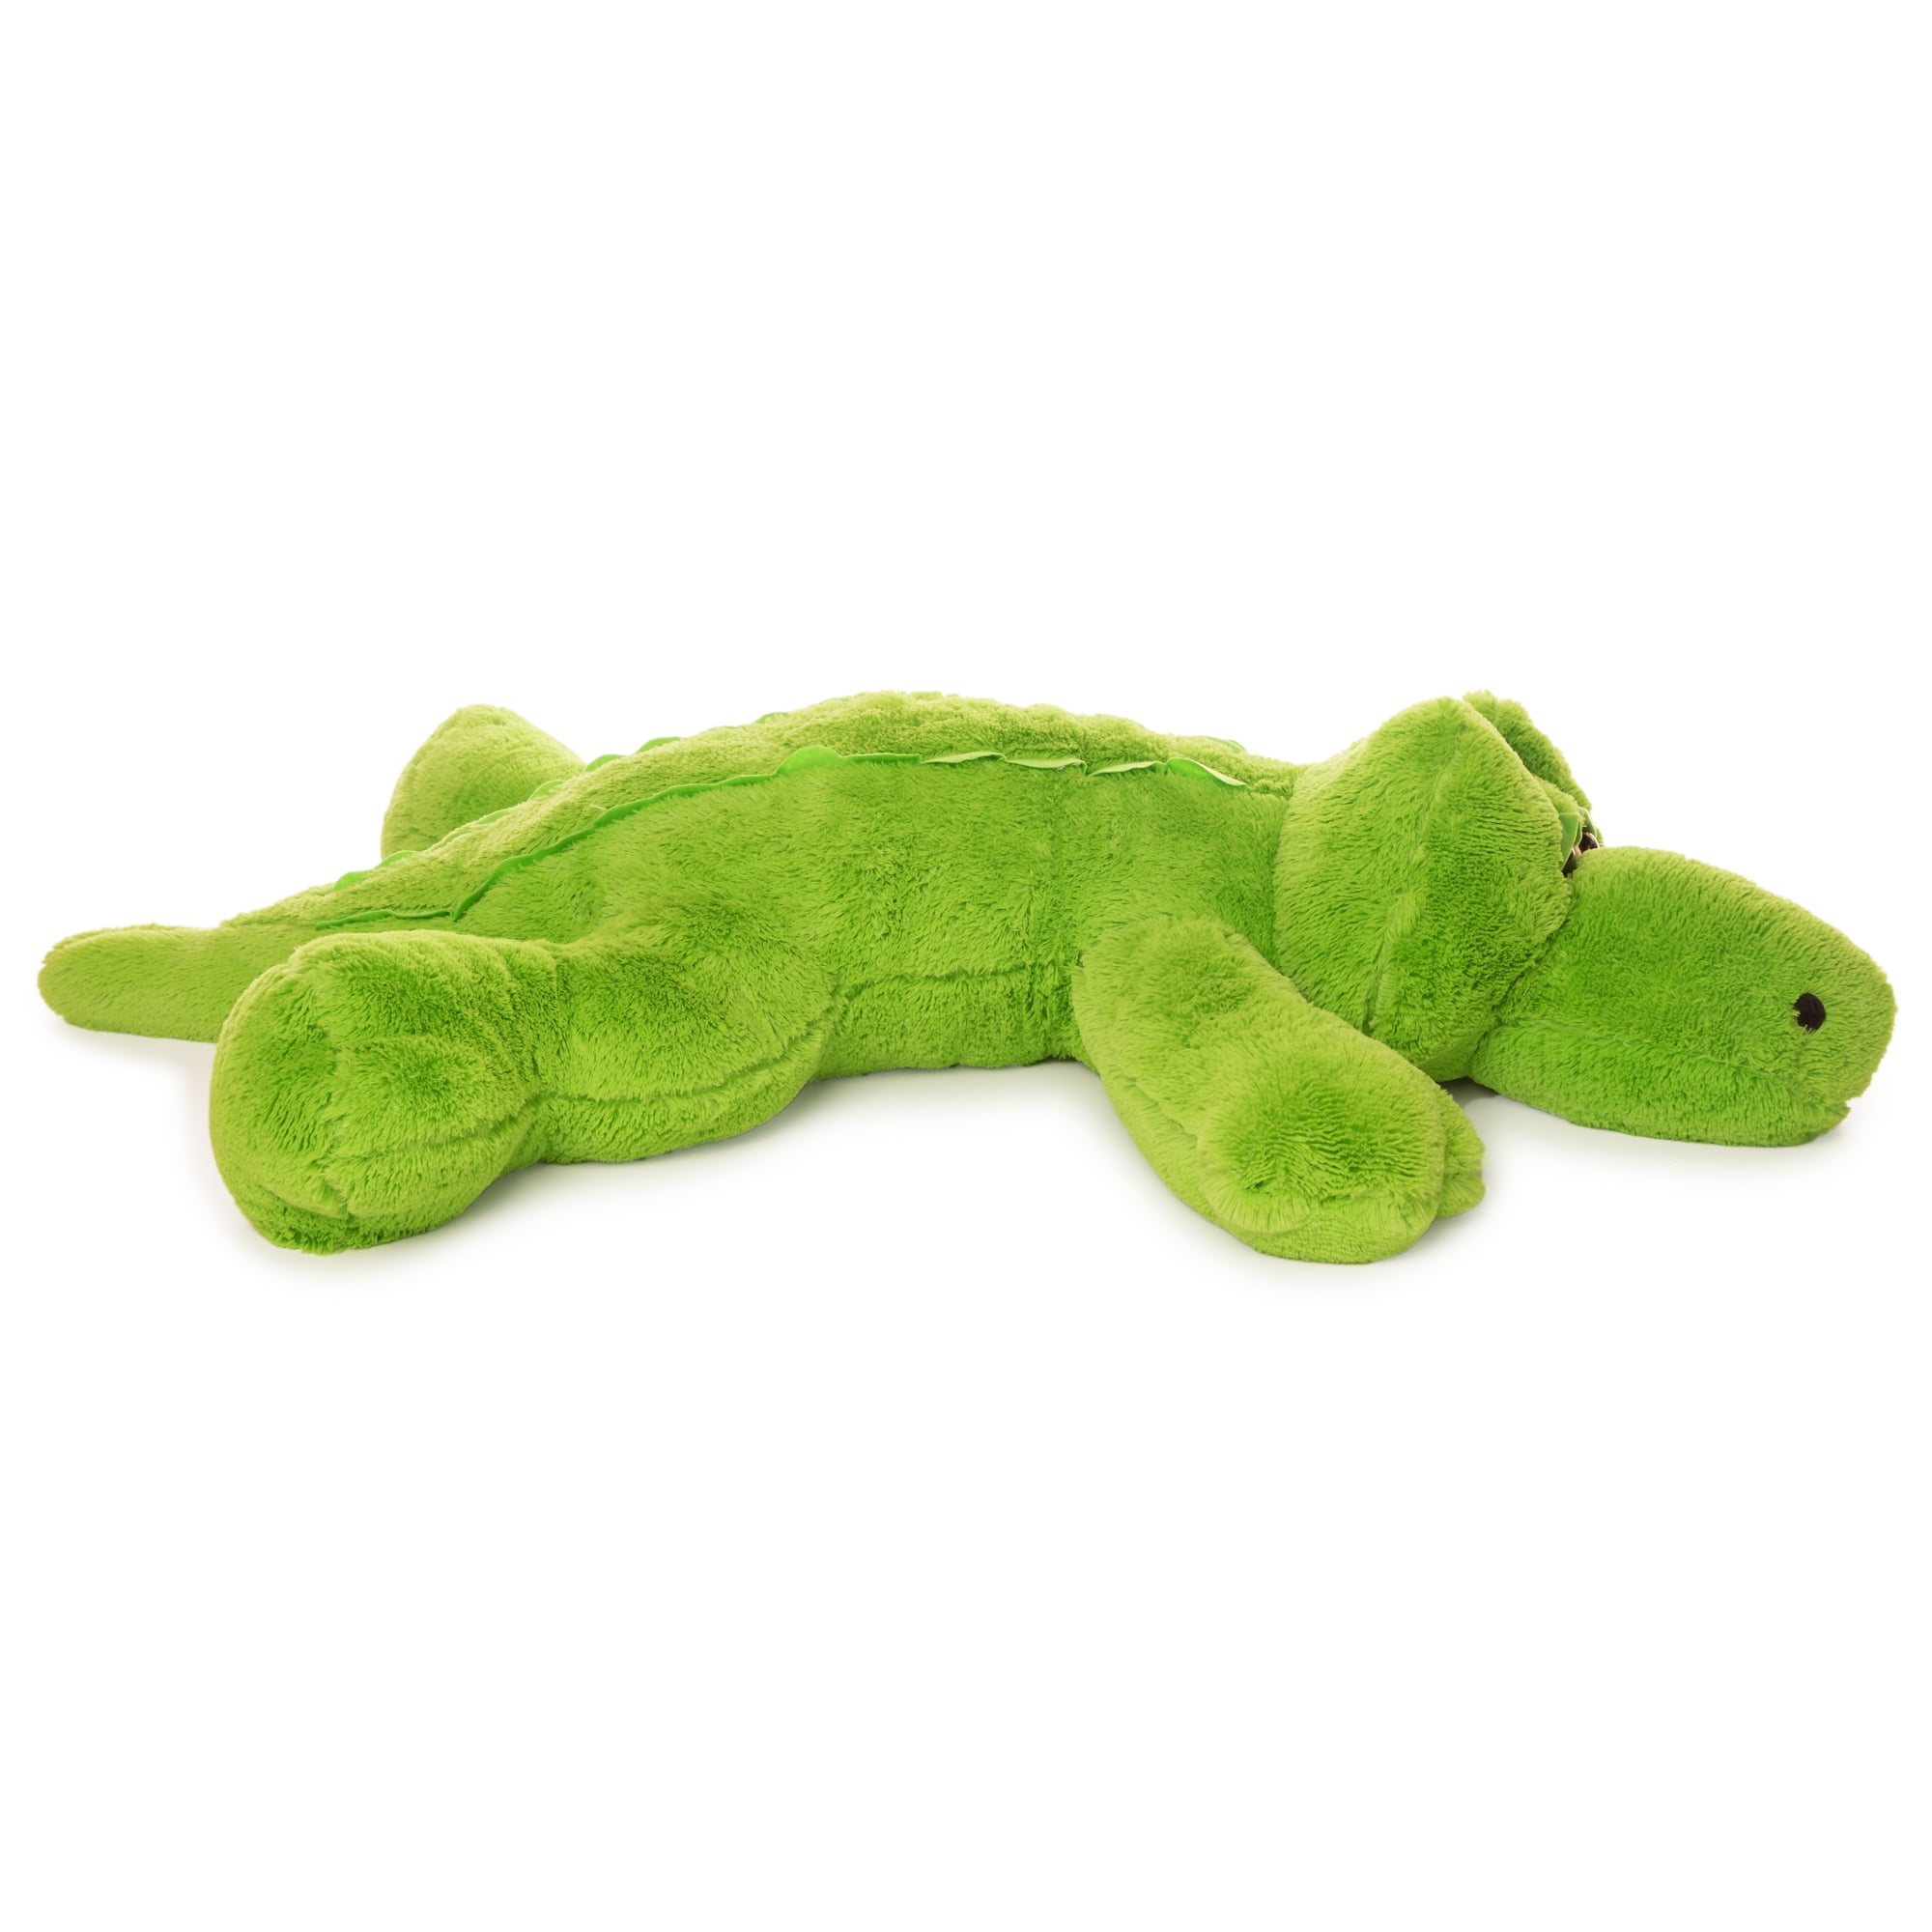 Best Made Toys Jumbo Alligator Giant 